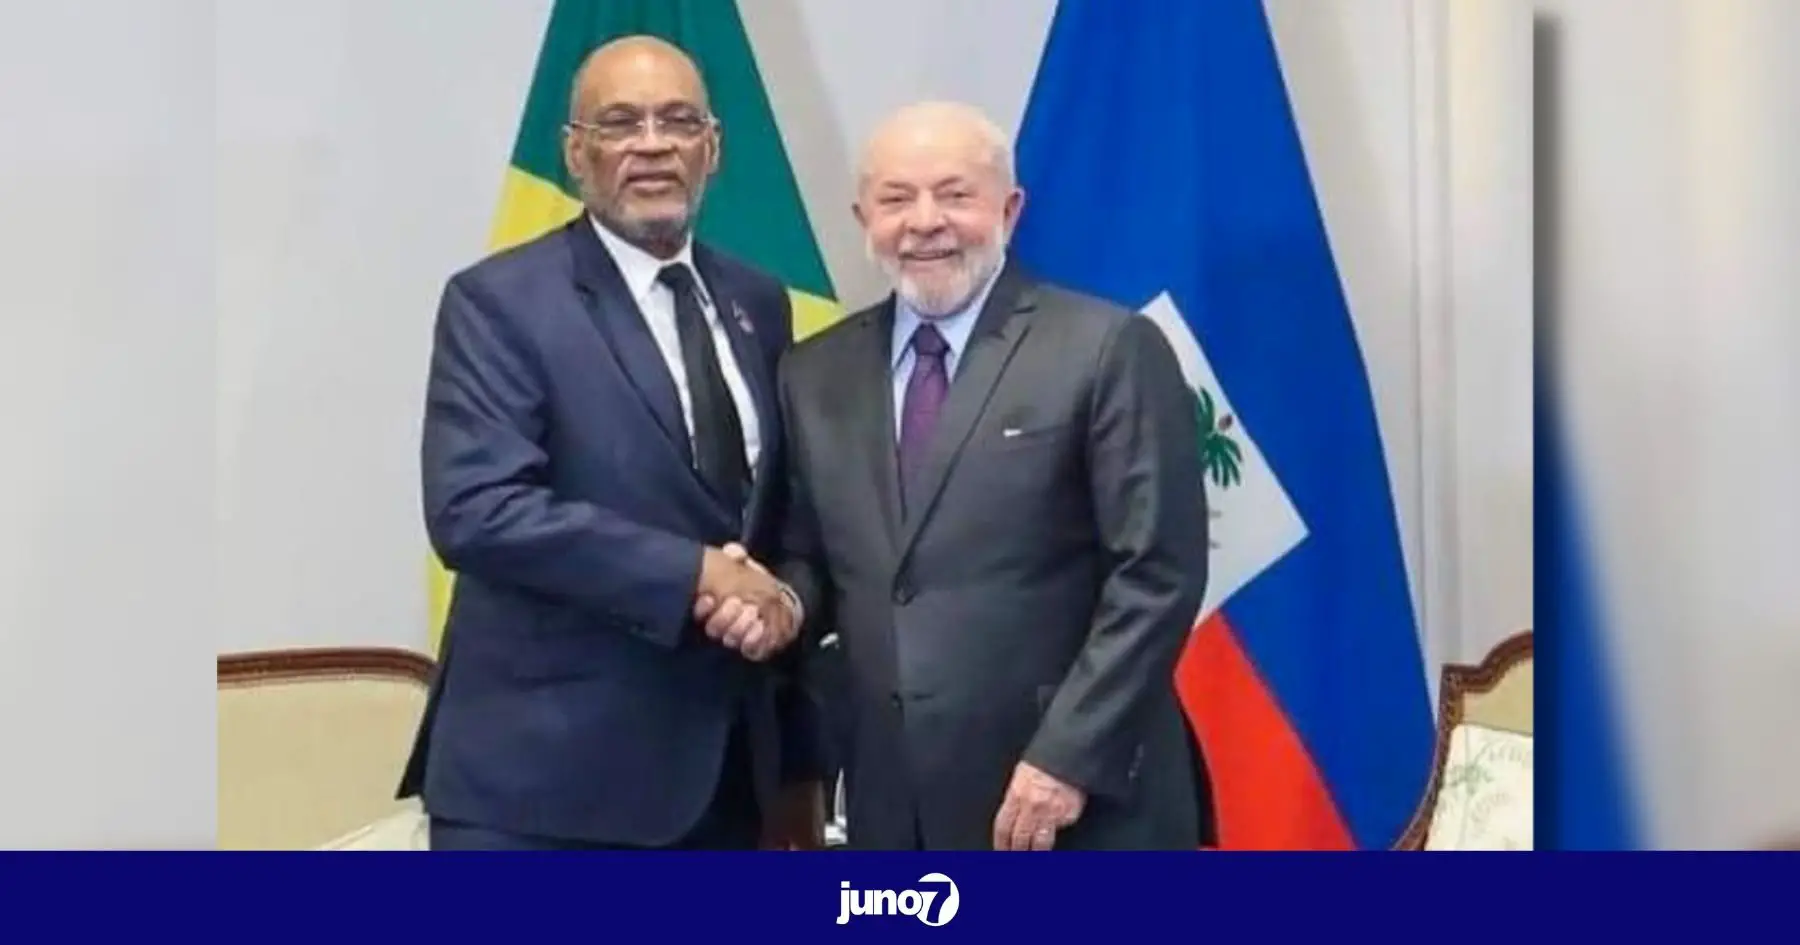 Ariel Henry sollicite le soutien du Brésil en matière de sécurité lors d'une rencontre avec Luiz Inácio Lula da Silva